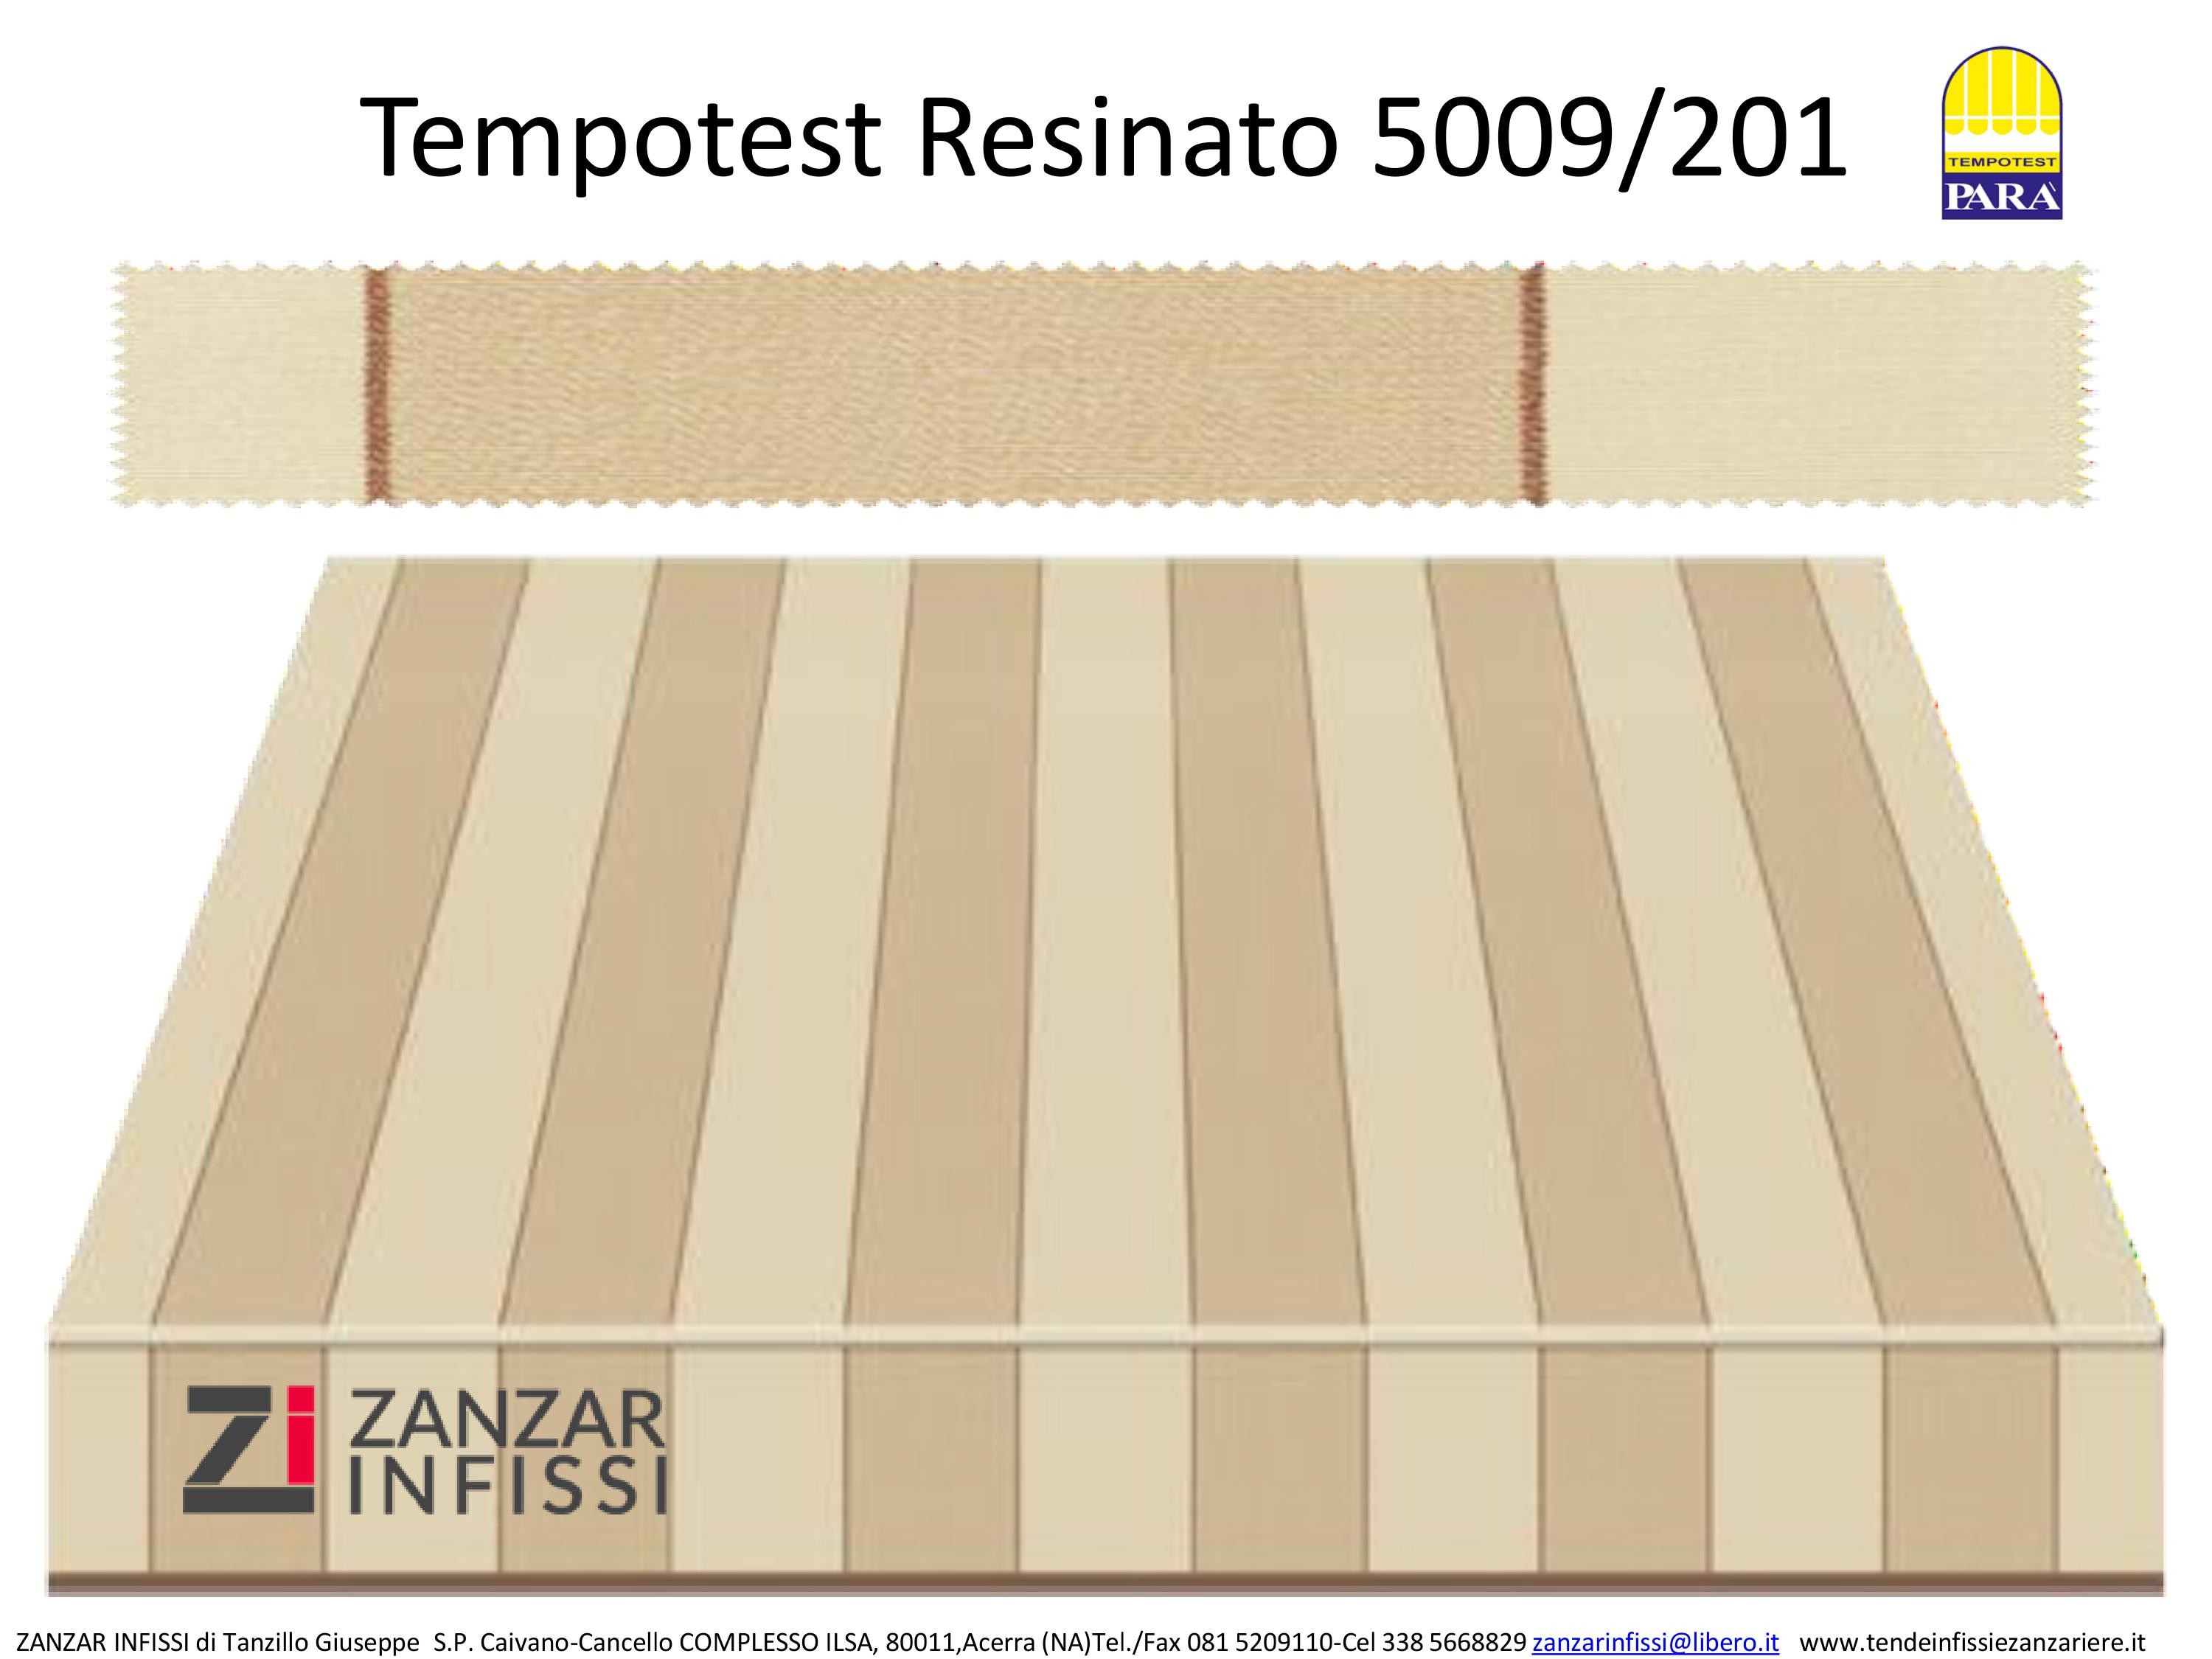 Tempotest resinato 5009/201